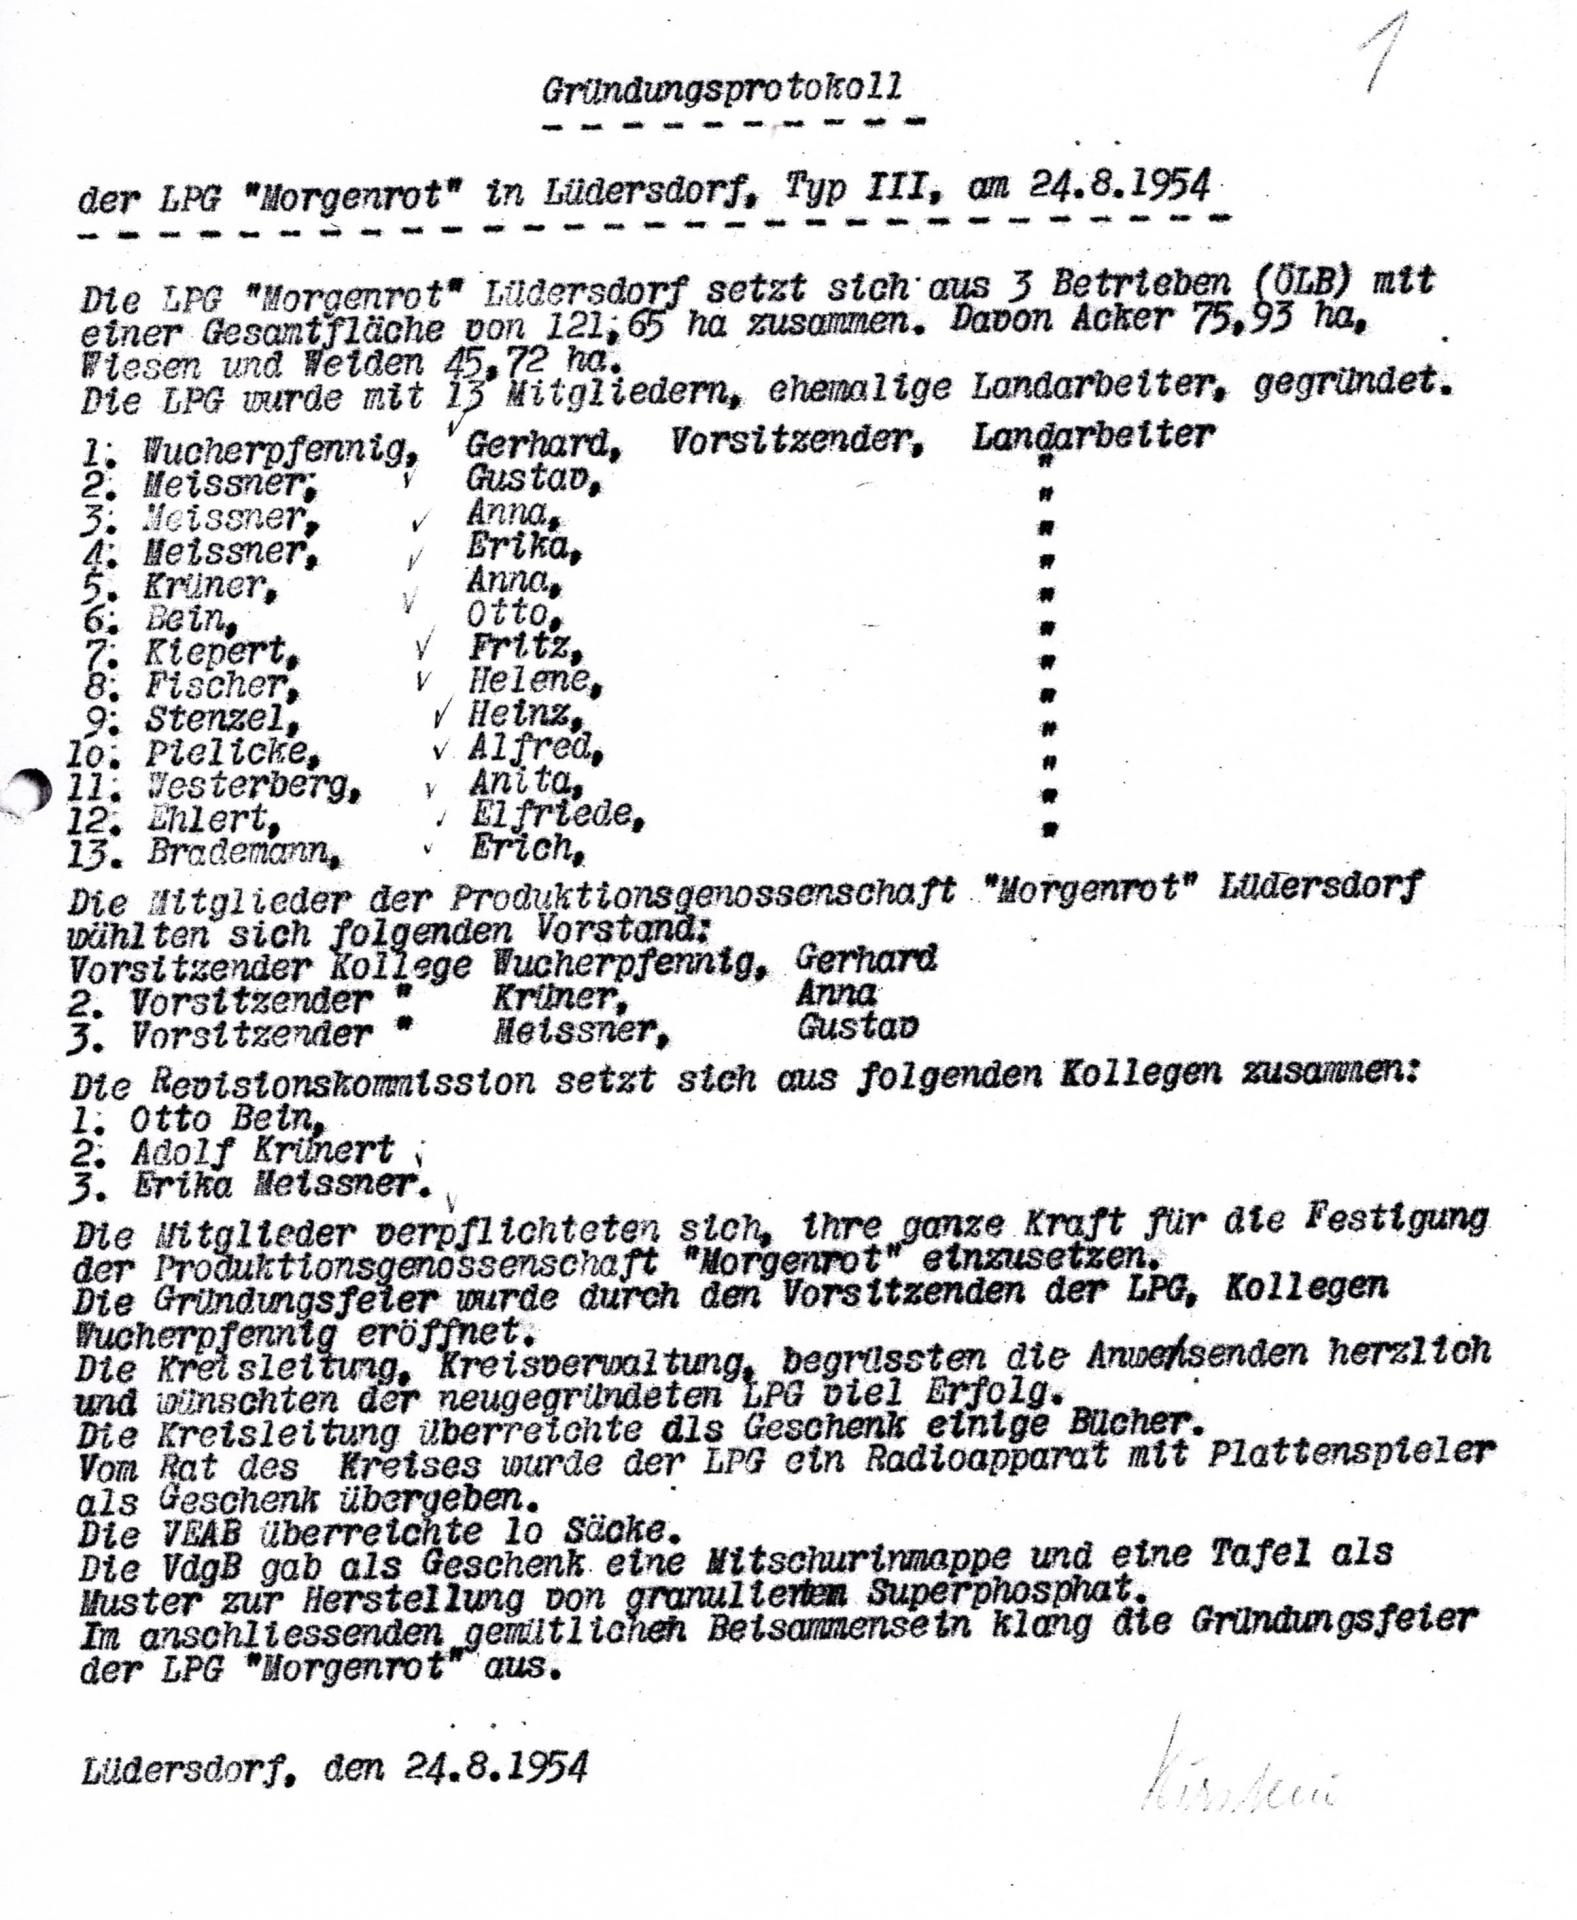 1954_Gruendungsprotokoll_LPG_Morgenrot